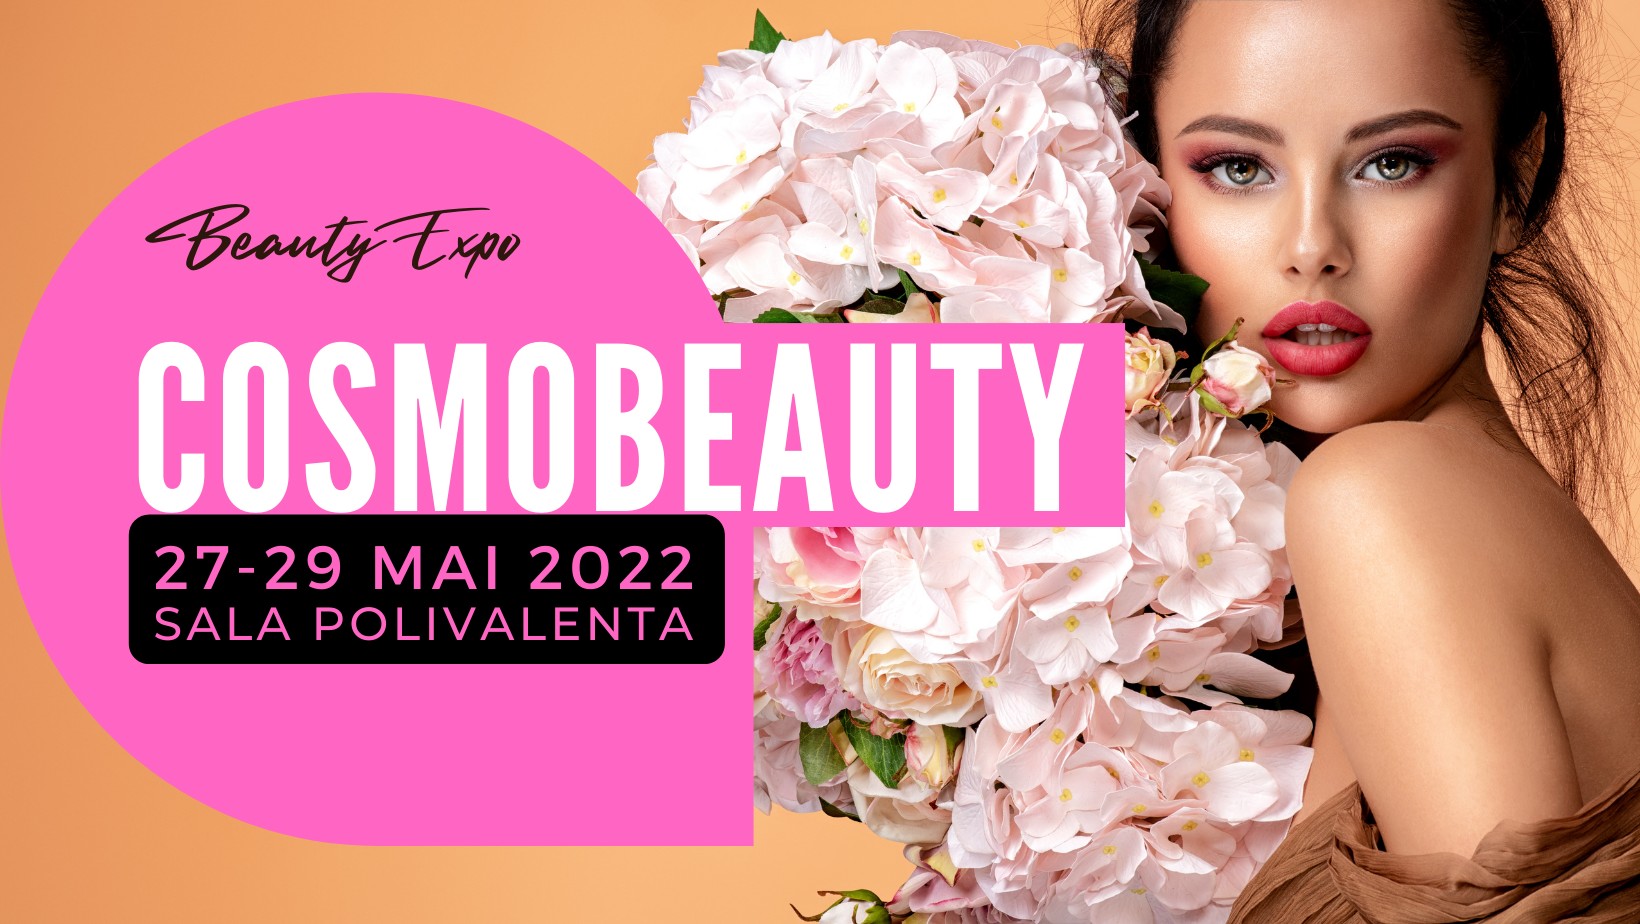 Comunicat de presă – Cosmobeauty EXPO 2022 – 27-29 mai 2022, Sala Polivalentă